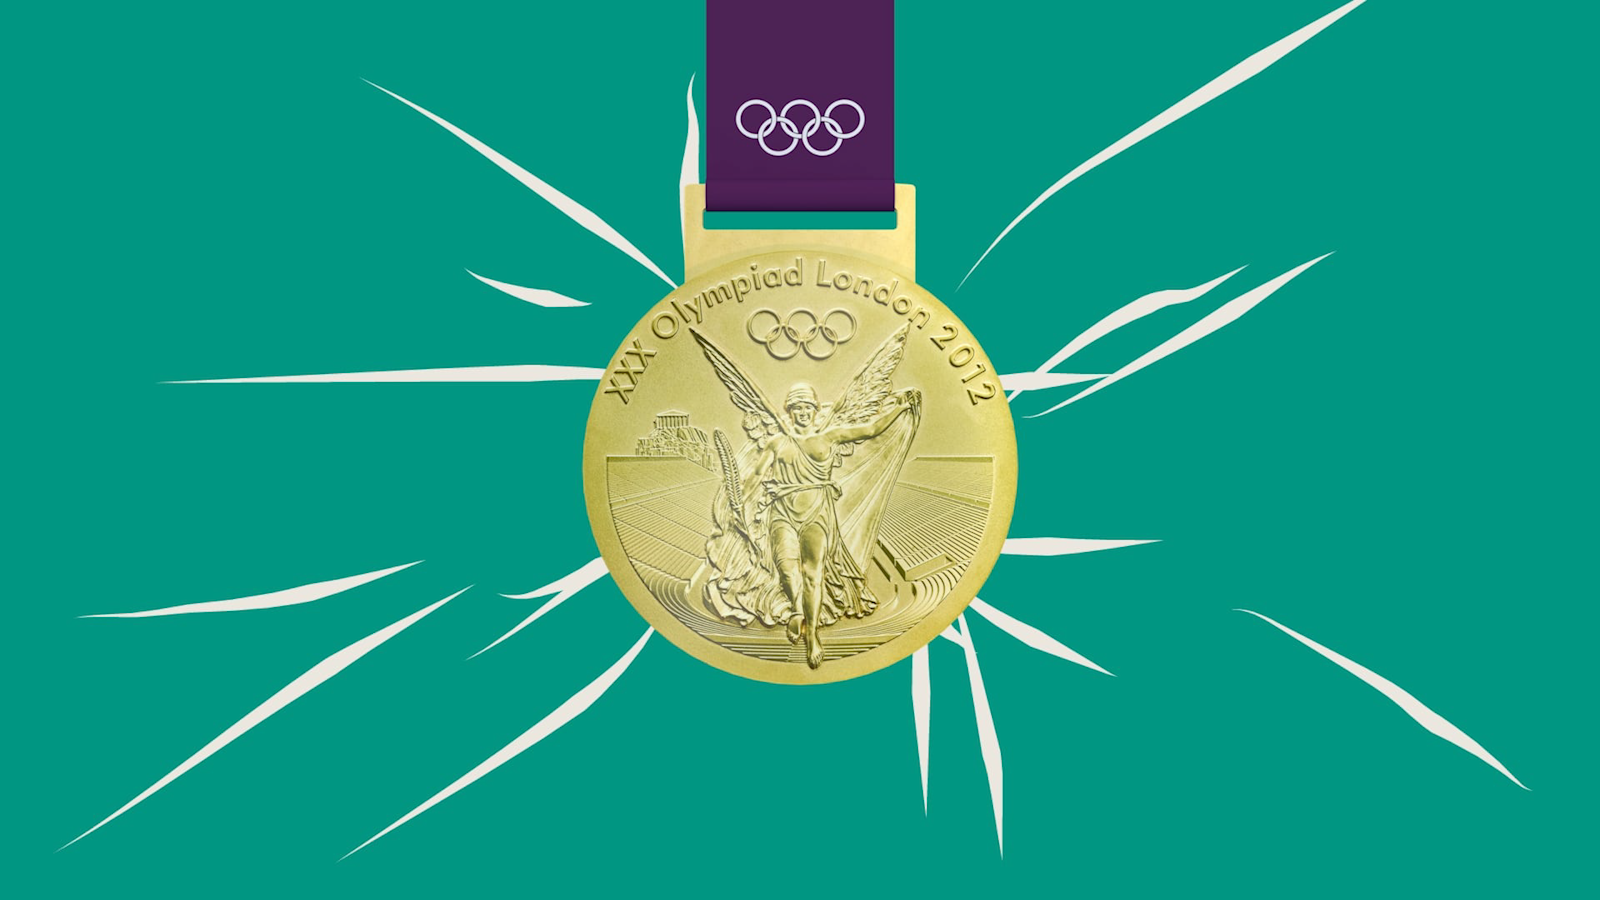 Olympiad London 2012 Medal